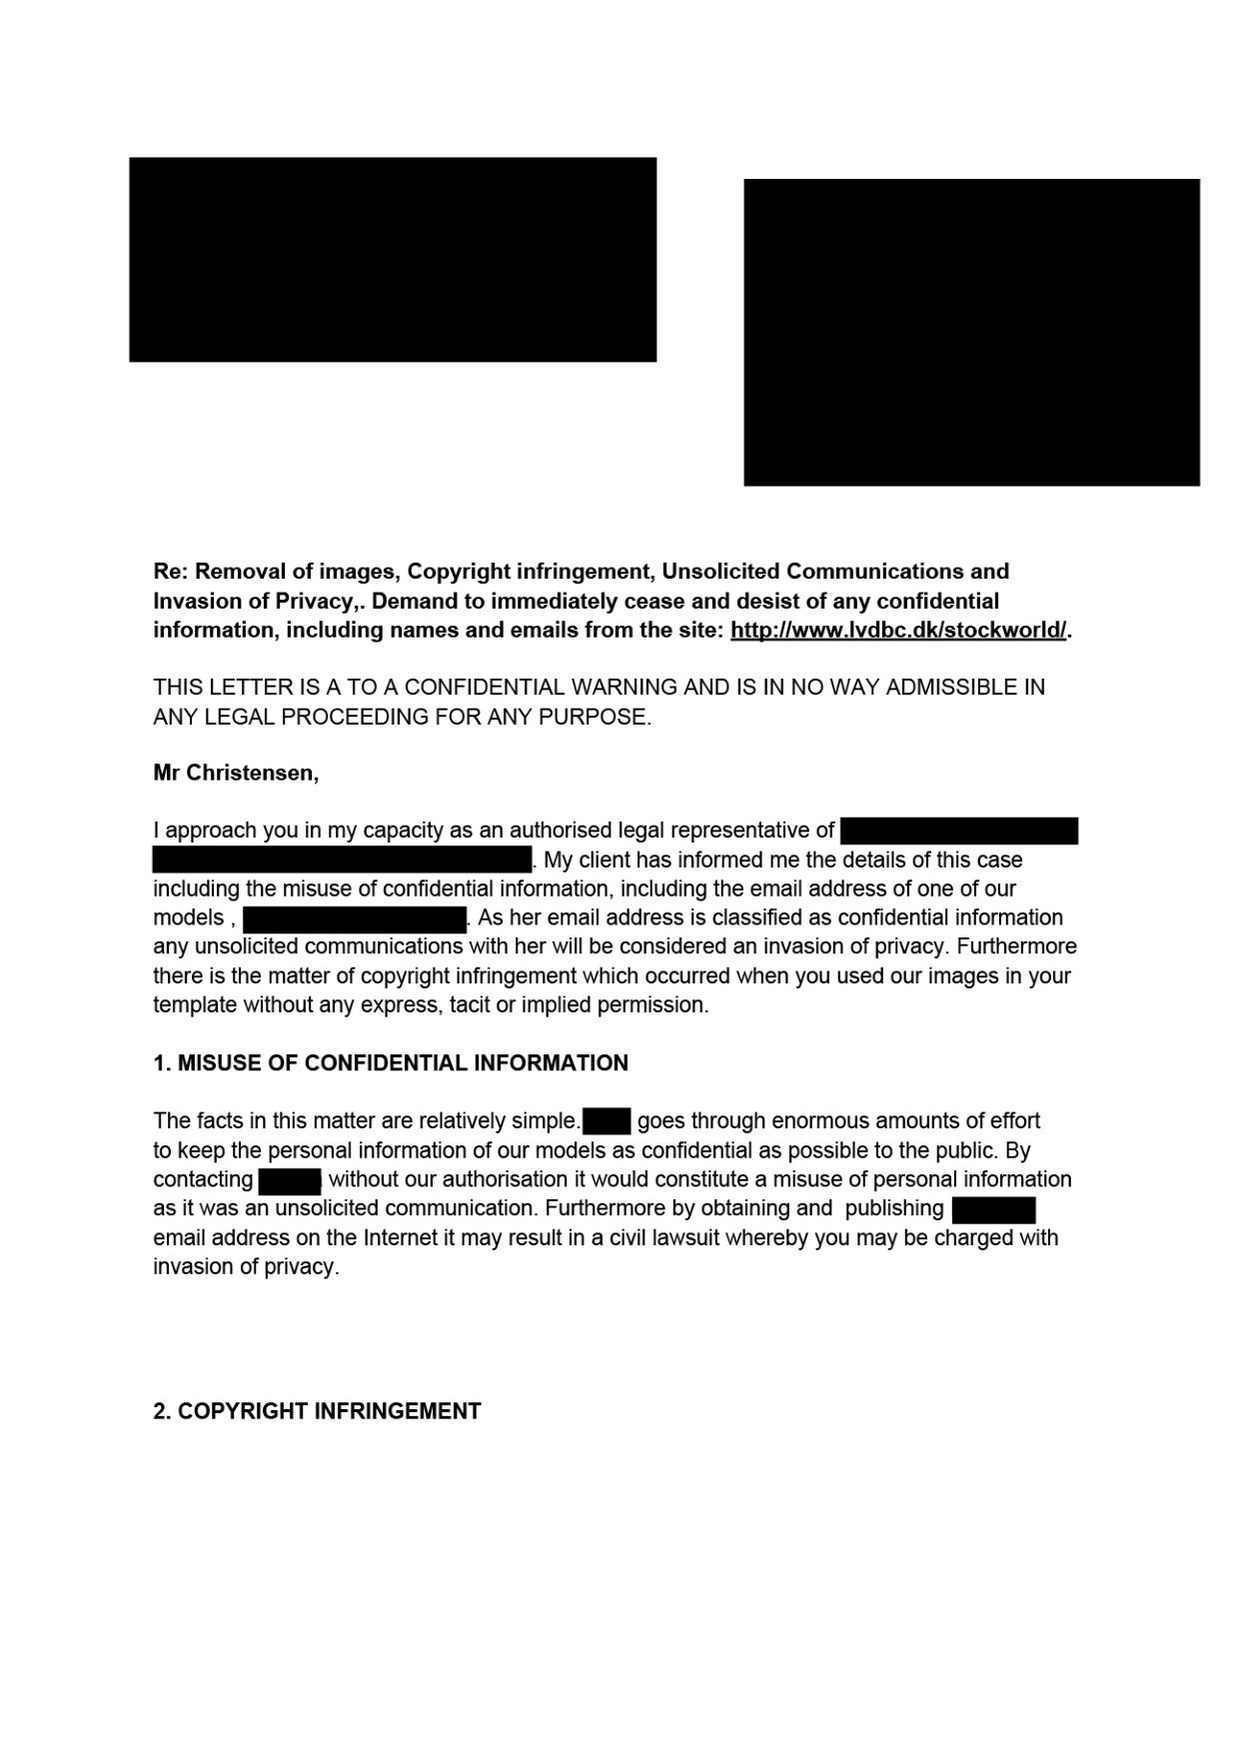 LetterforChristensen censor.pdf